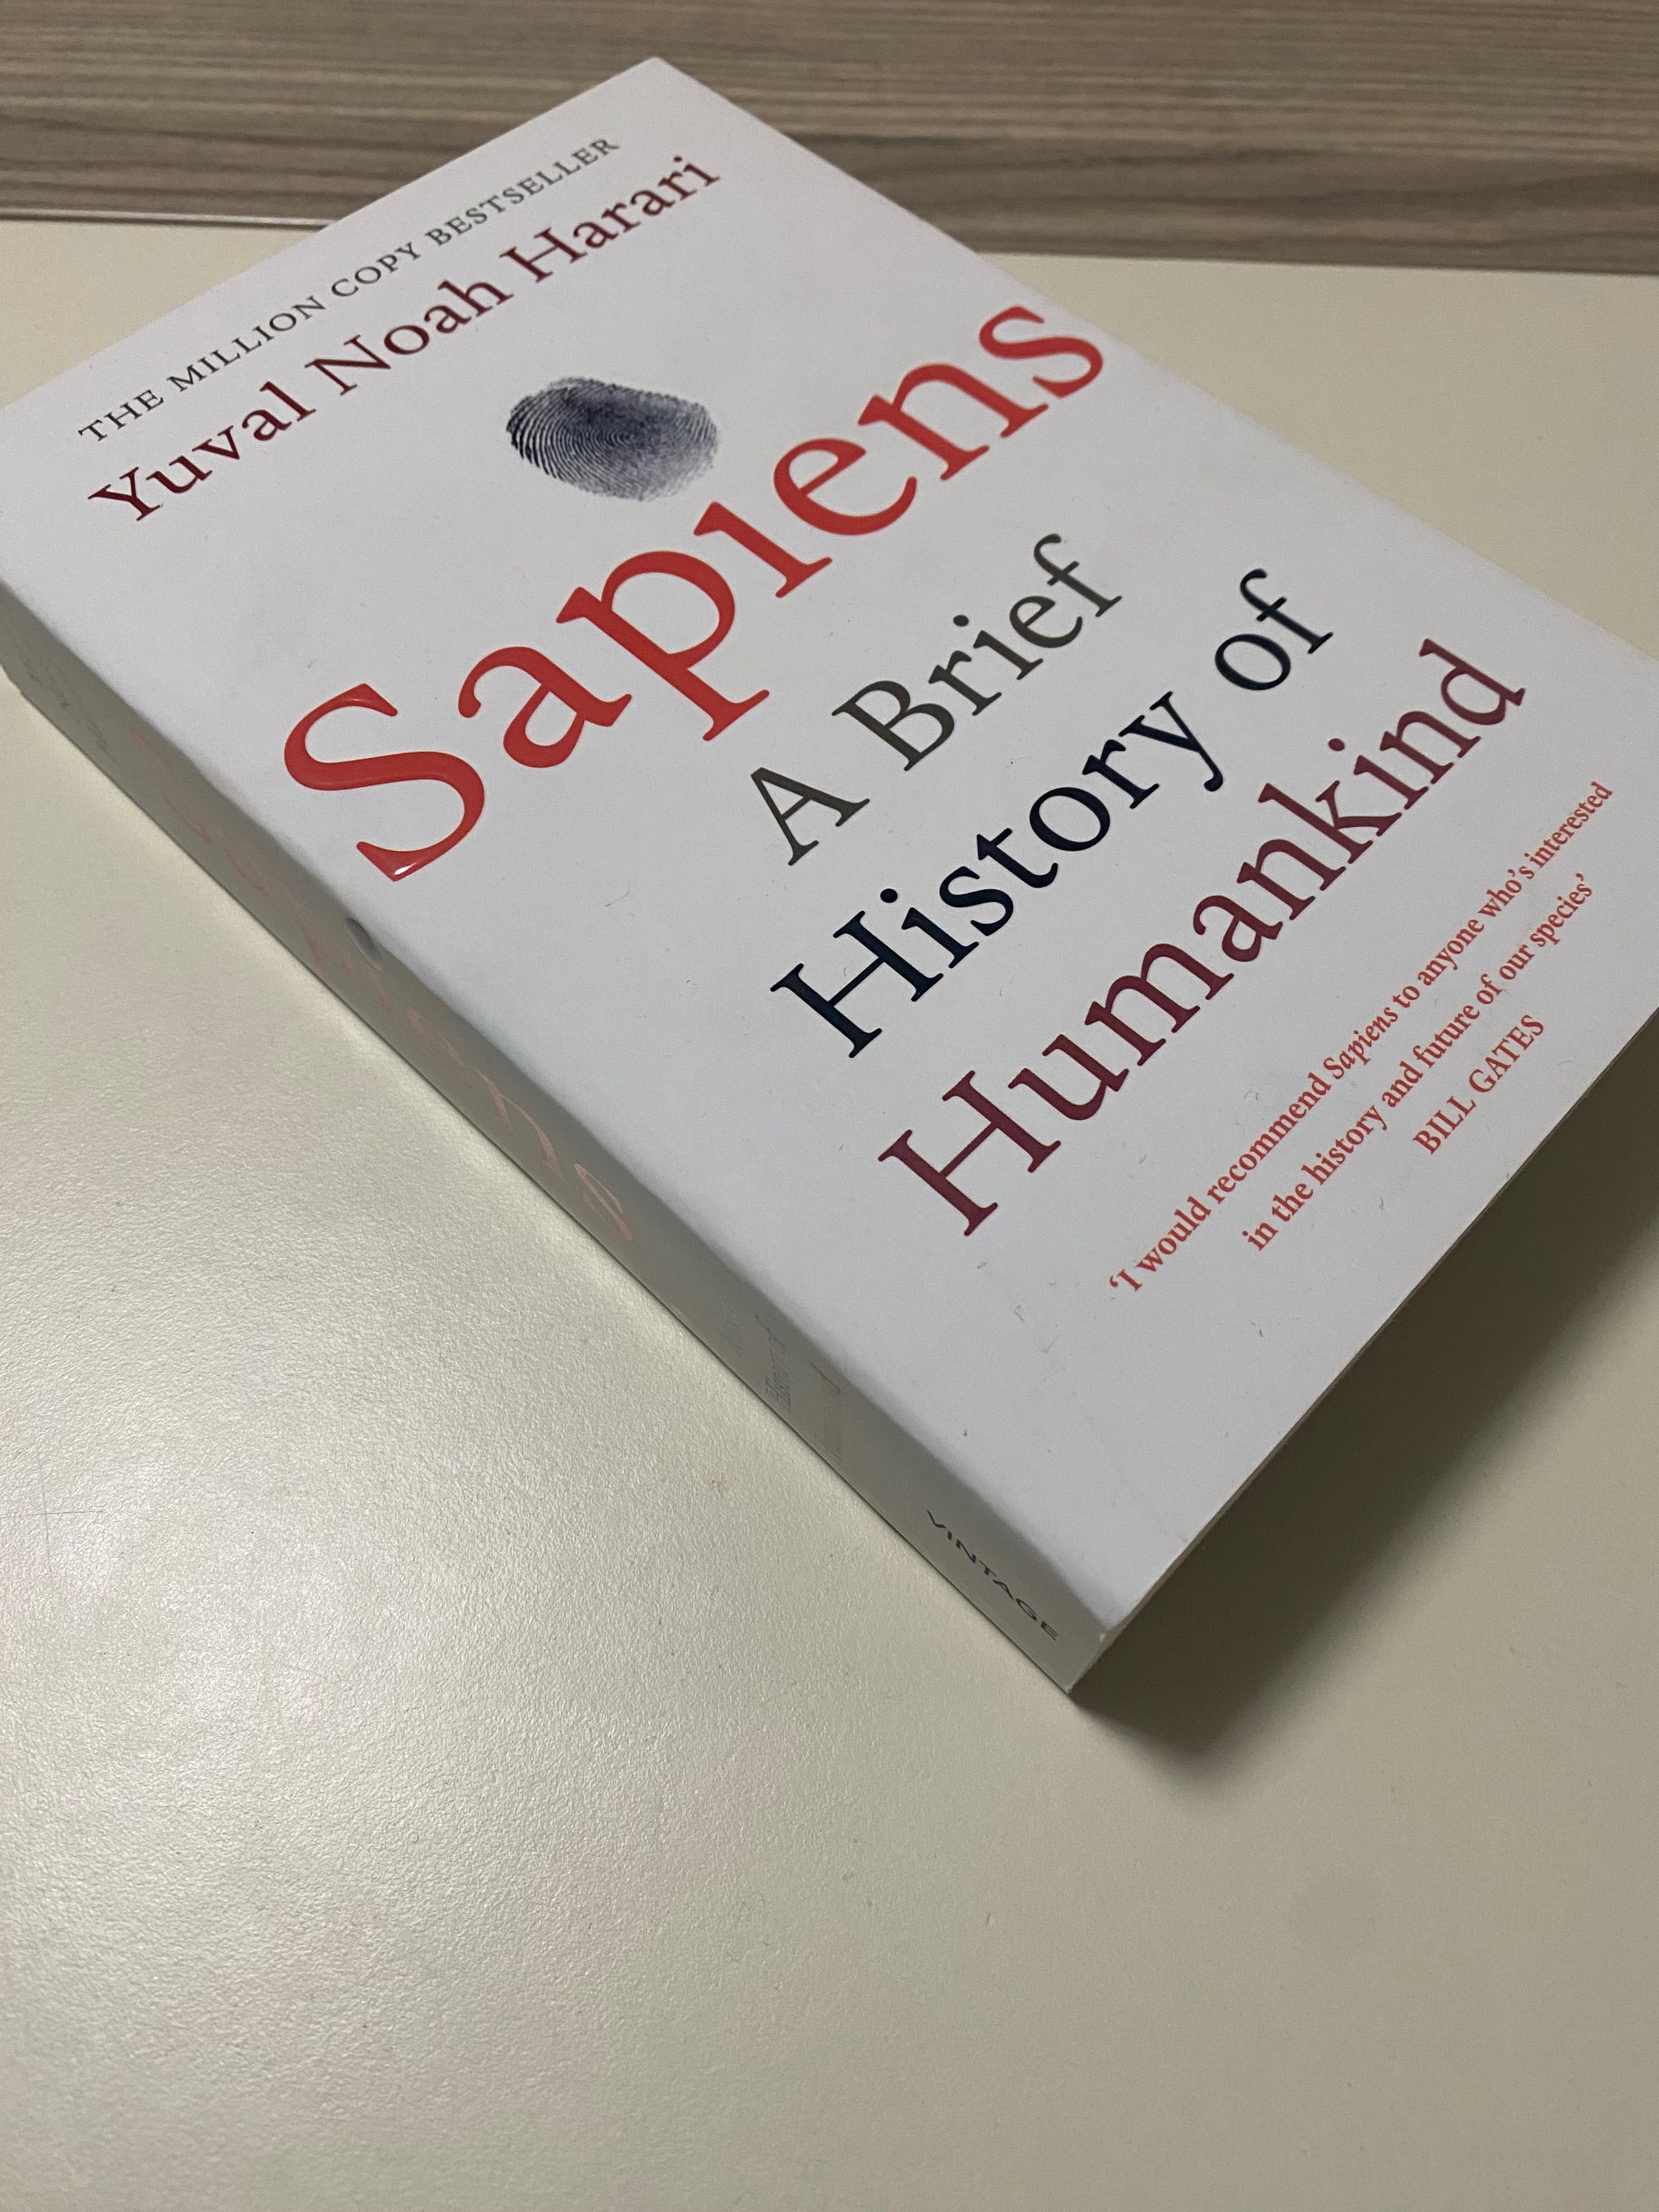 Yuval noah harari Sapiens